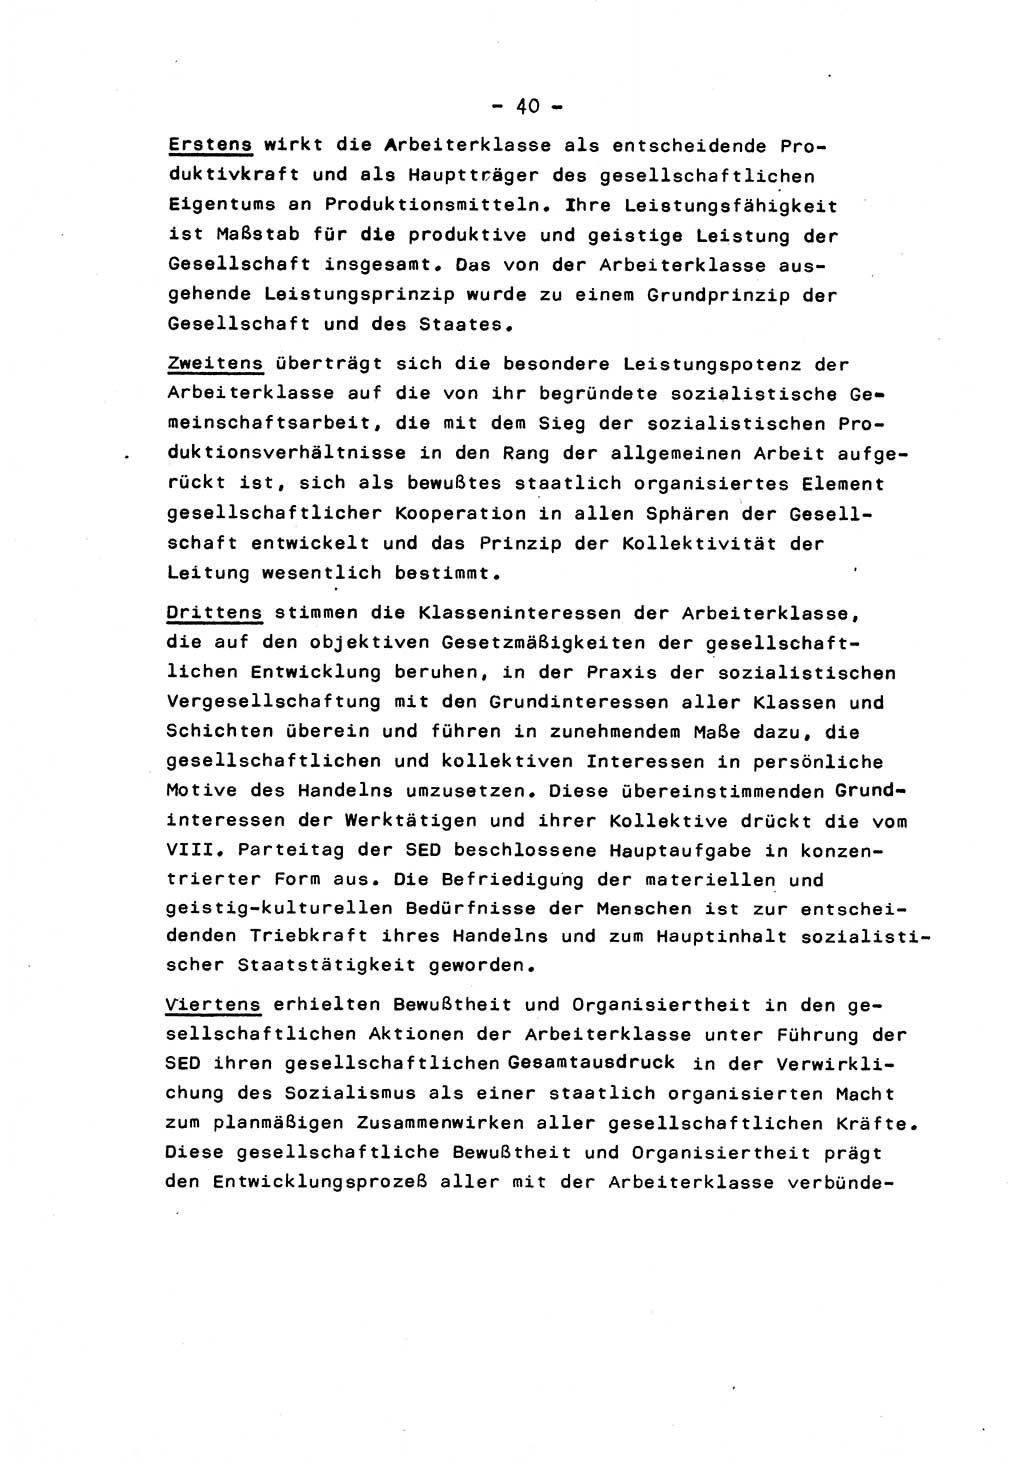 Marxistisch-leninistische Staats- und Rechtstheorie [Deutsche Demokratische Republik (DDR)] 1975, Seite 40 (ML St.-R.-Th. DDR 1975, S. 40)